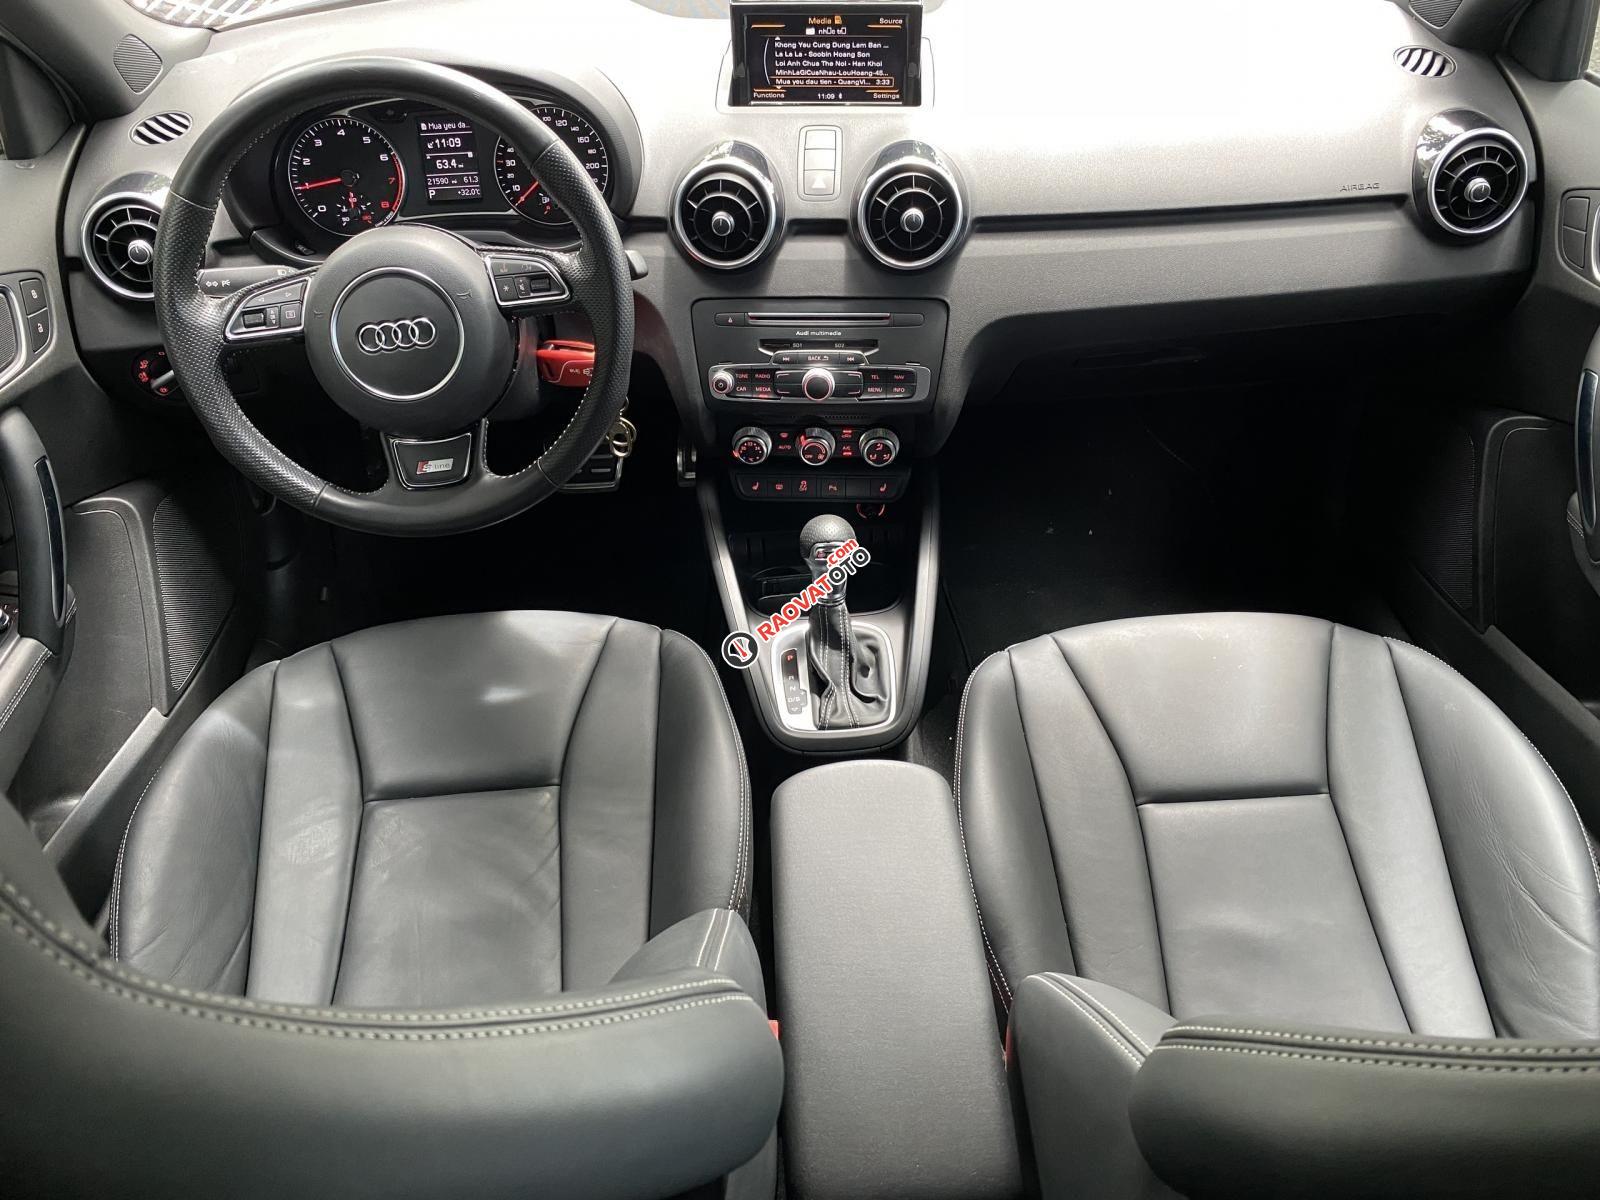 Bán xe Audi A1 bản Sline năm 2015, siêu lướt 21.000km nội thất đen zin nguyên bản, option miên man-11